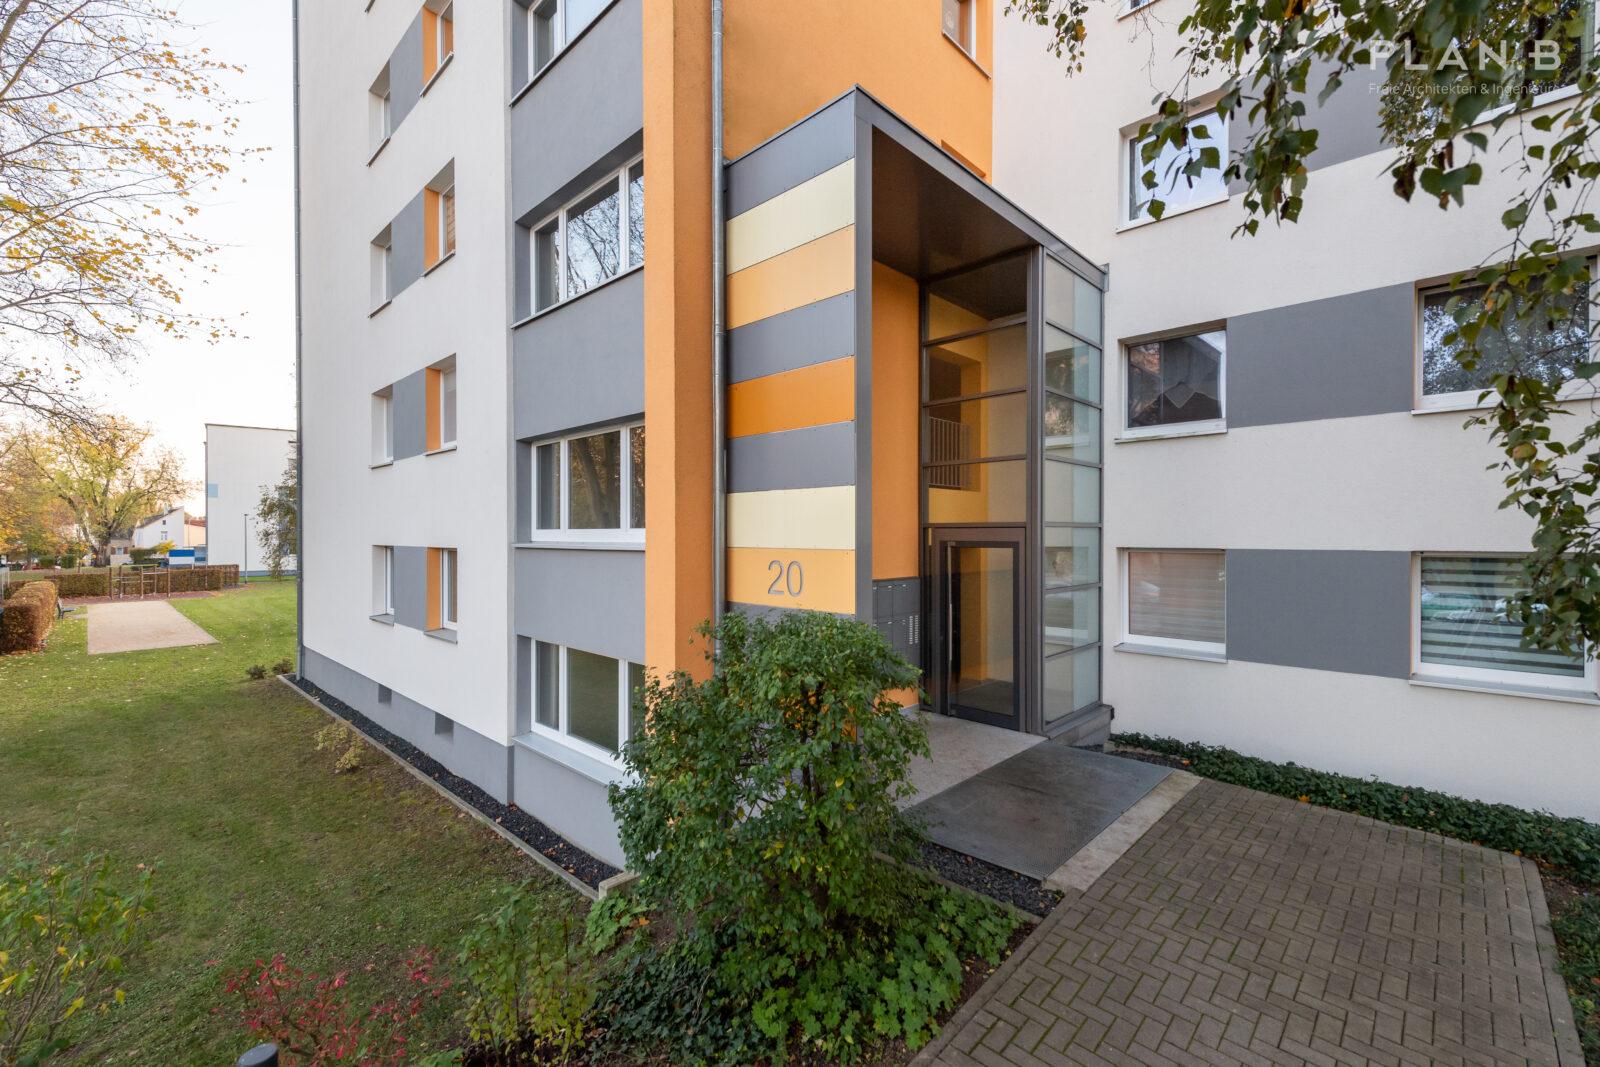 Quartierserneuerung und energetische Sanierung eines Wohnquartiers in Wiesbaden